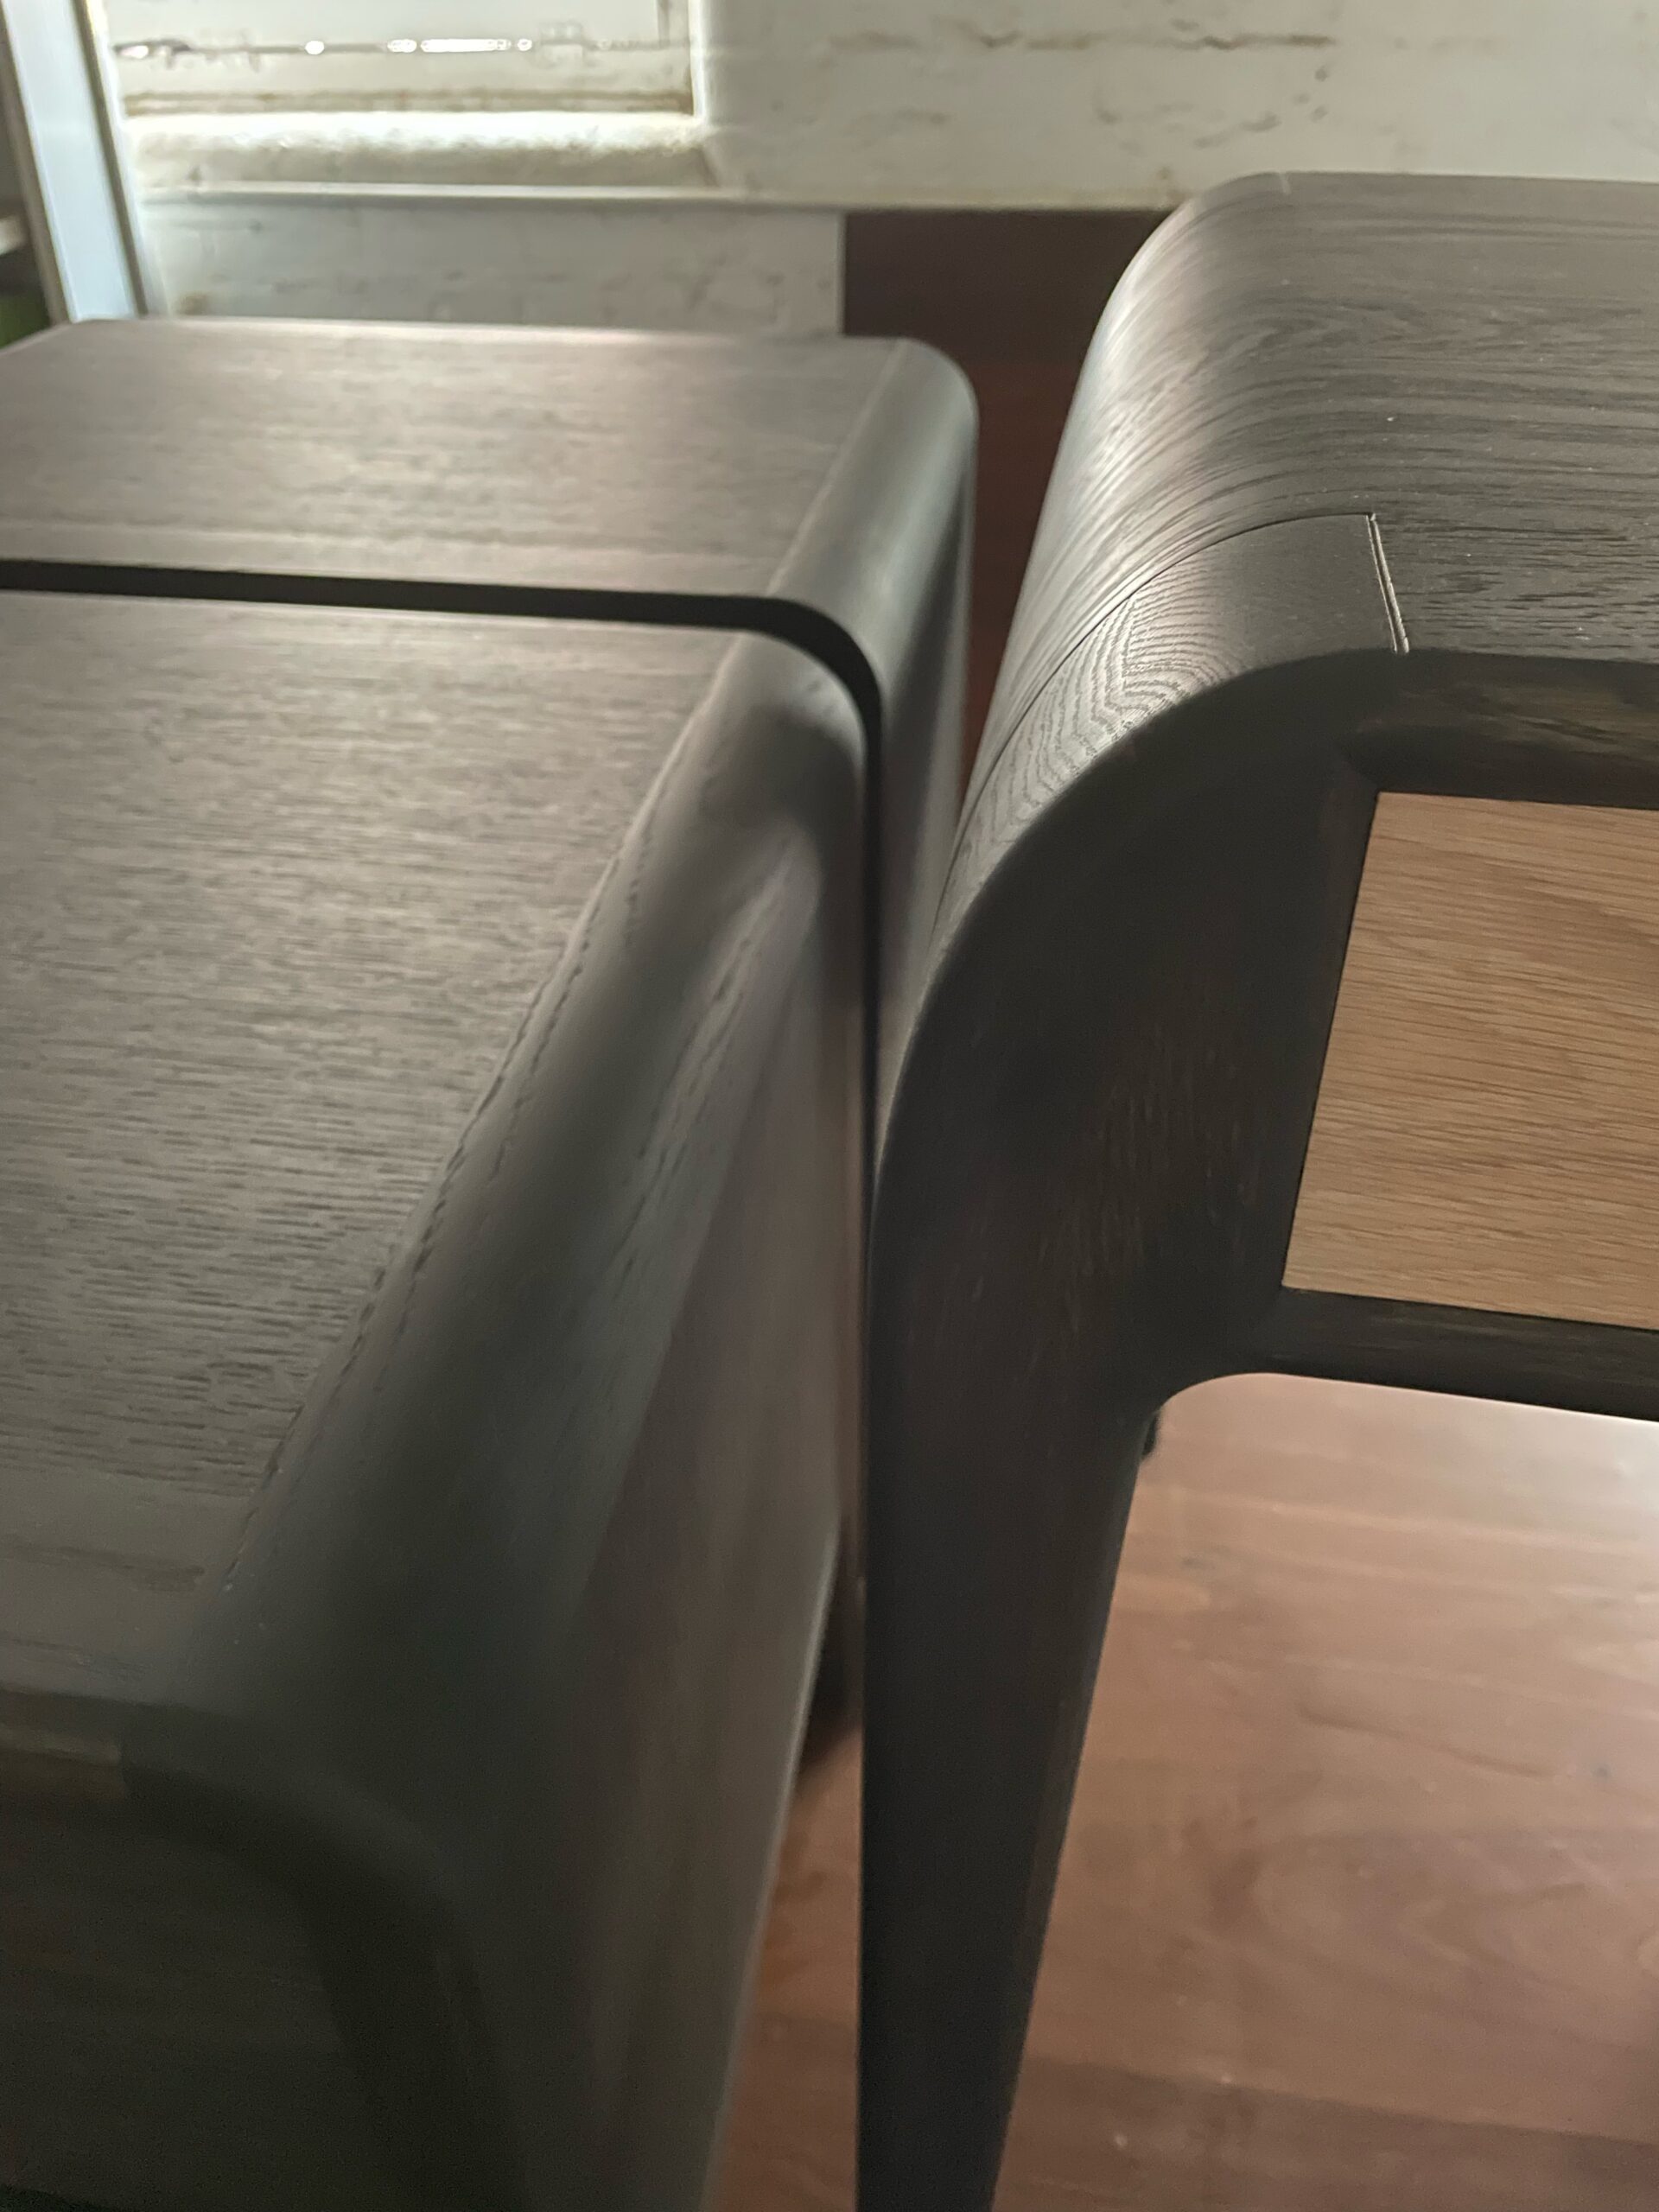 Curved corner detail - Ebonised oak bedside tables and desk for penthouse suite.